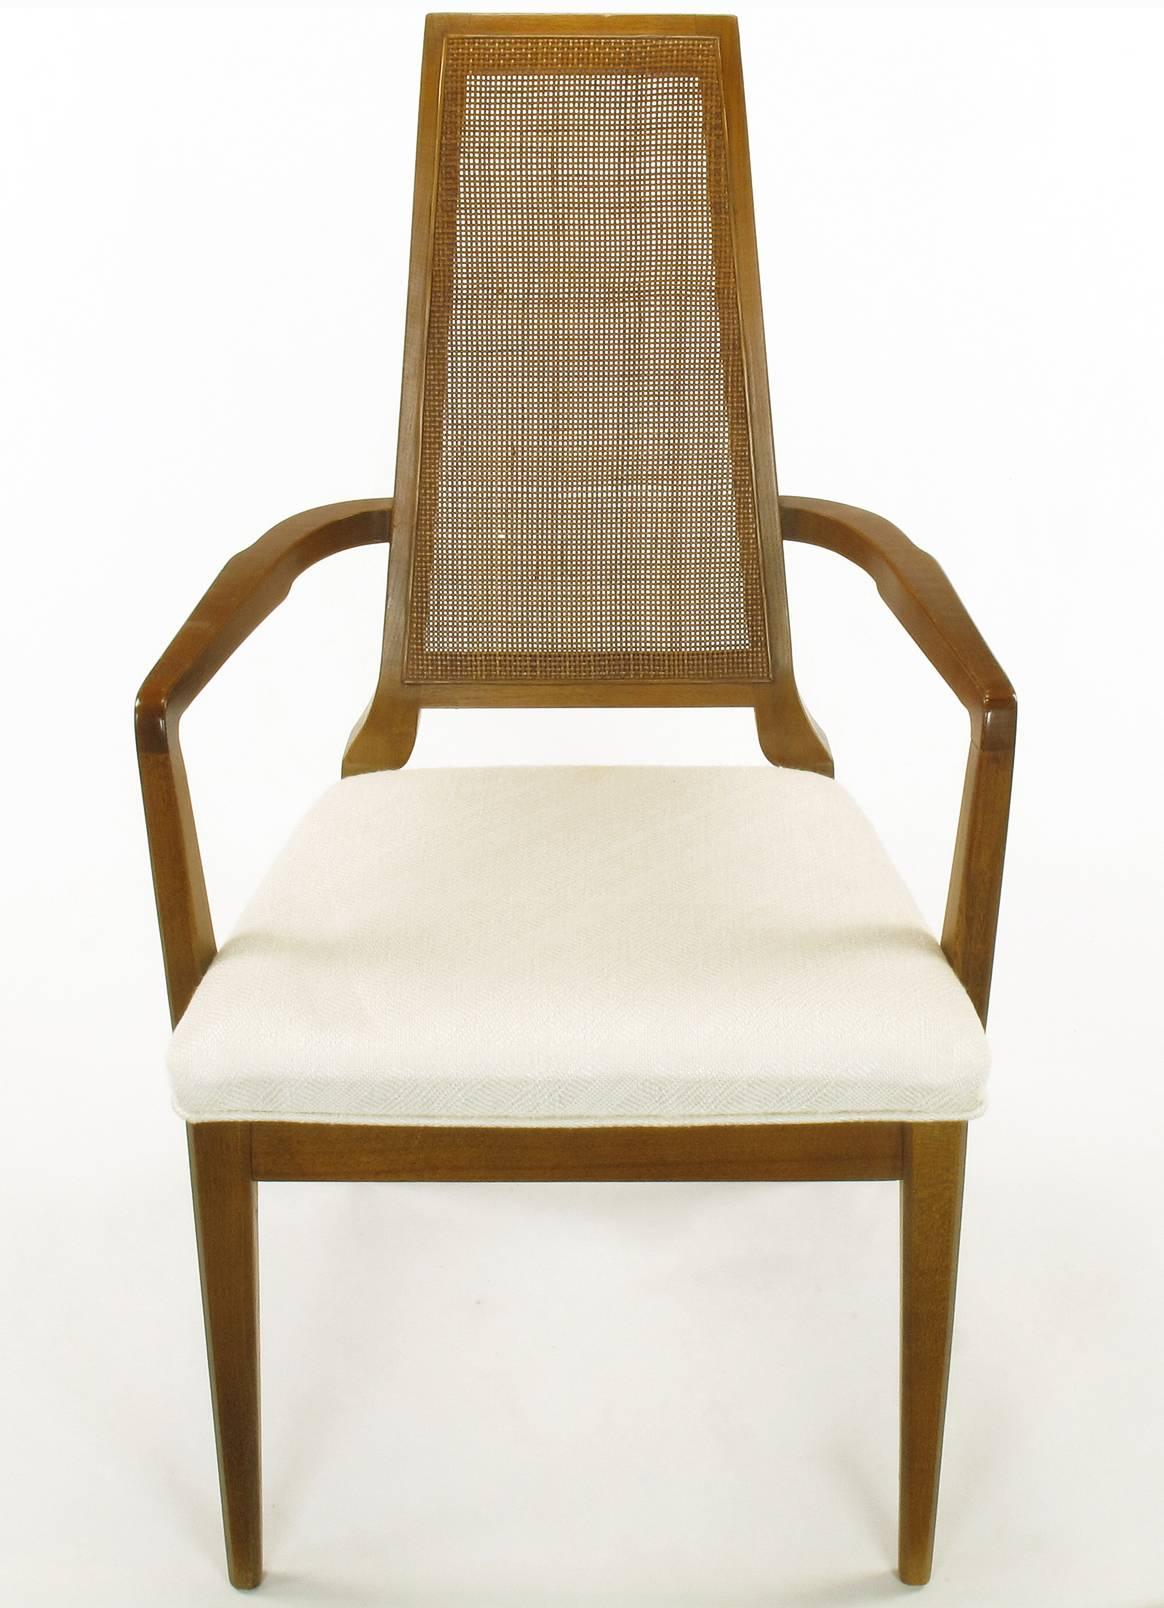 ensemble moderne des années 1950 de six chaises de salle à manger à dossier en rotin de fabrication danoise. Cadres en noyer finement sculptés avec des détails peu communs tels que les dossiers étroits et courbés et les pieds sculpturaux. Rembourré